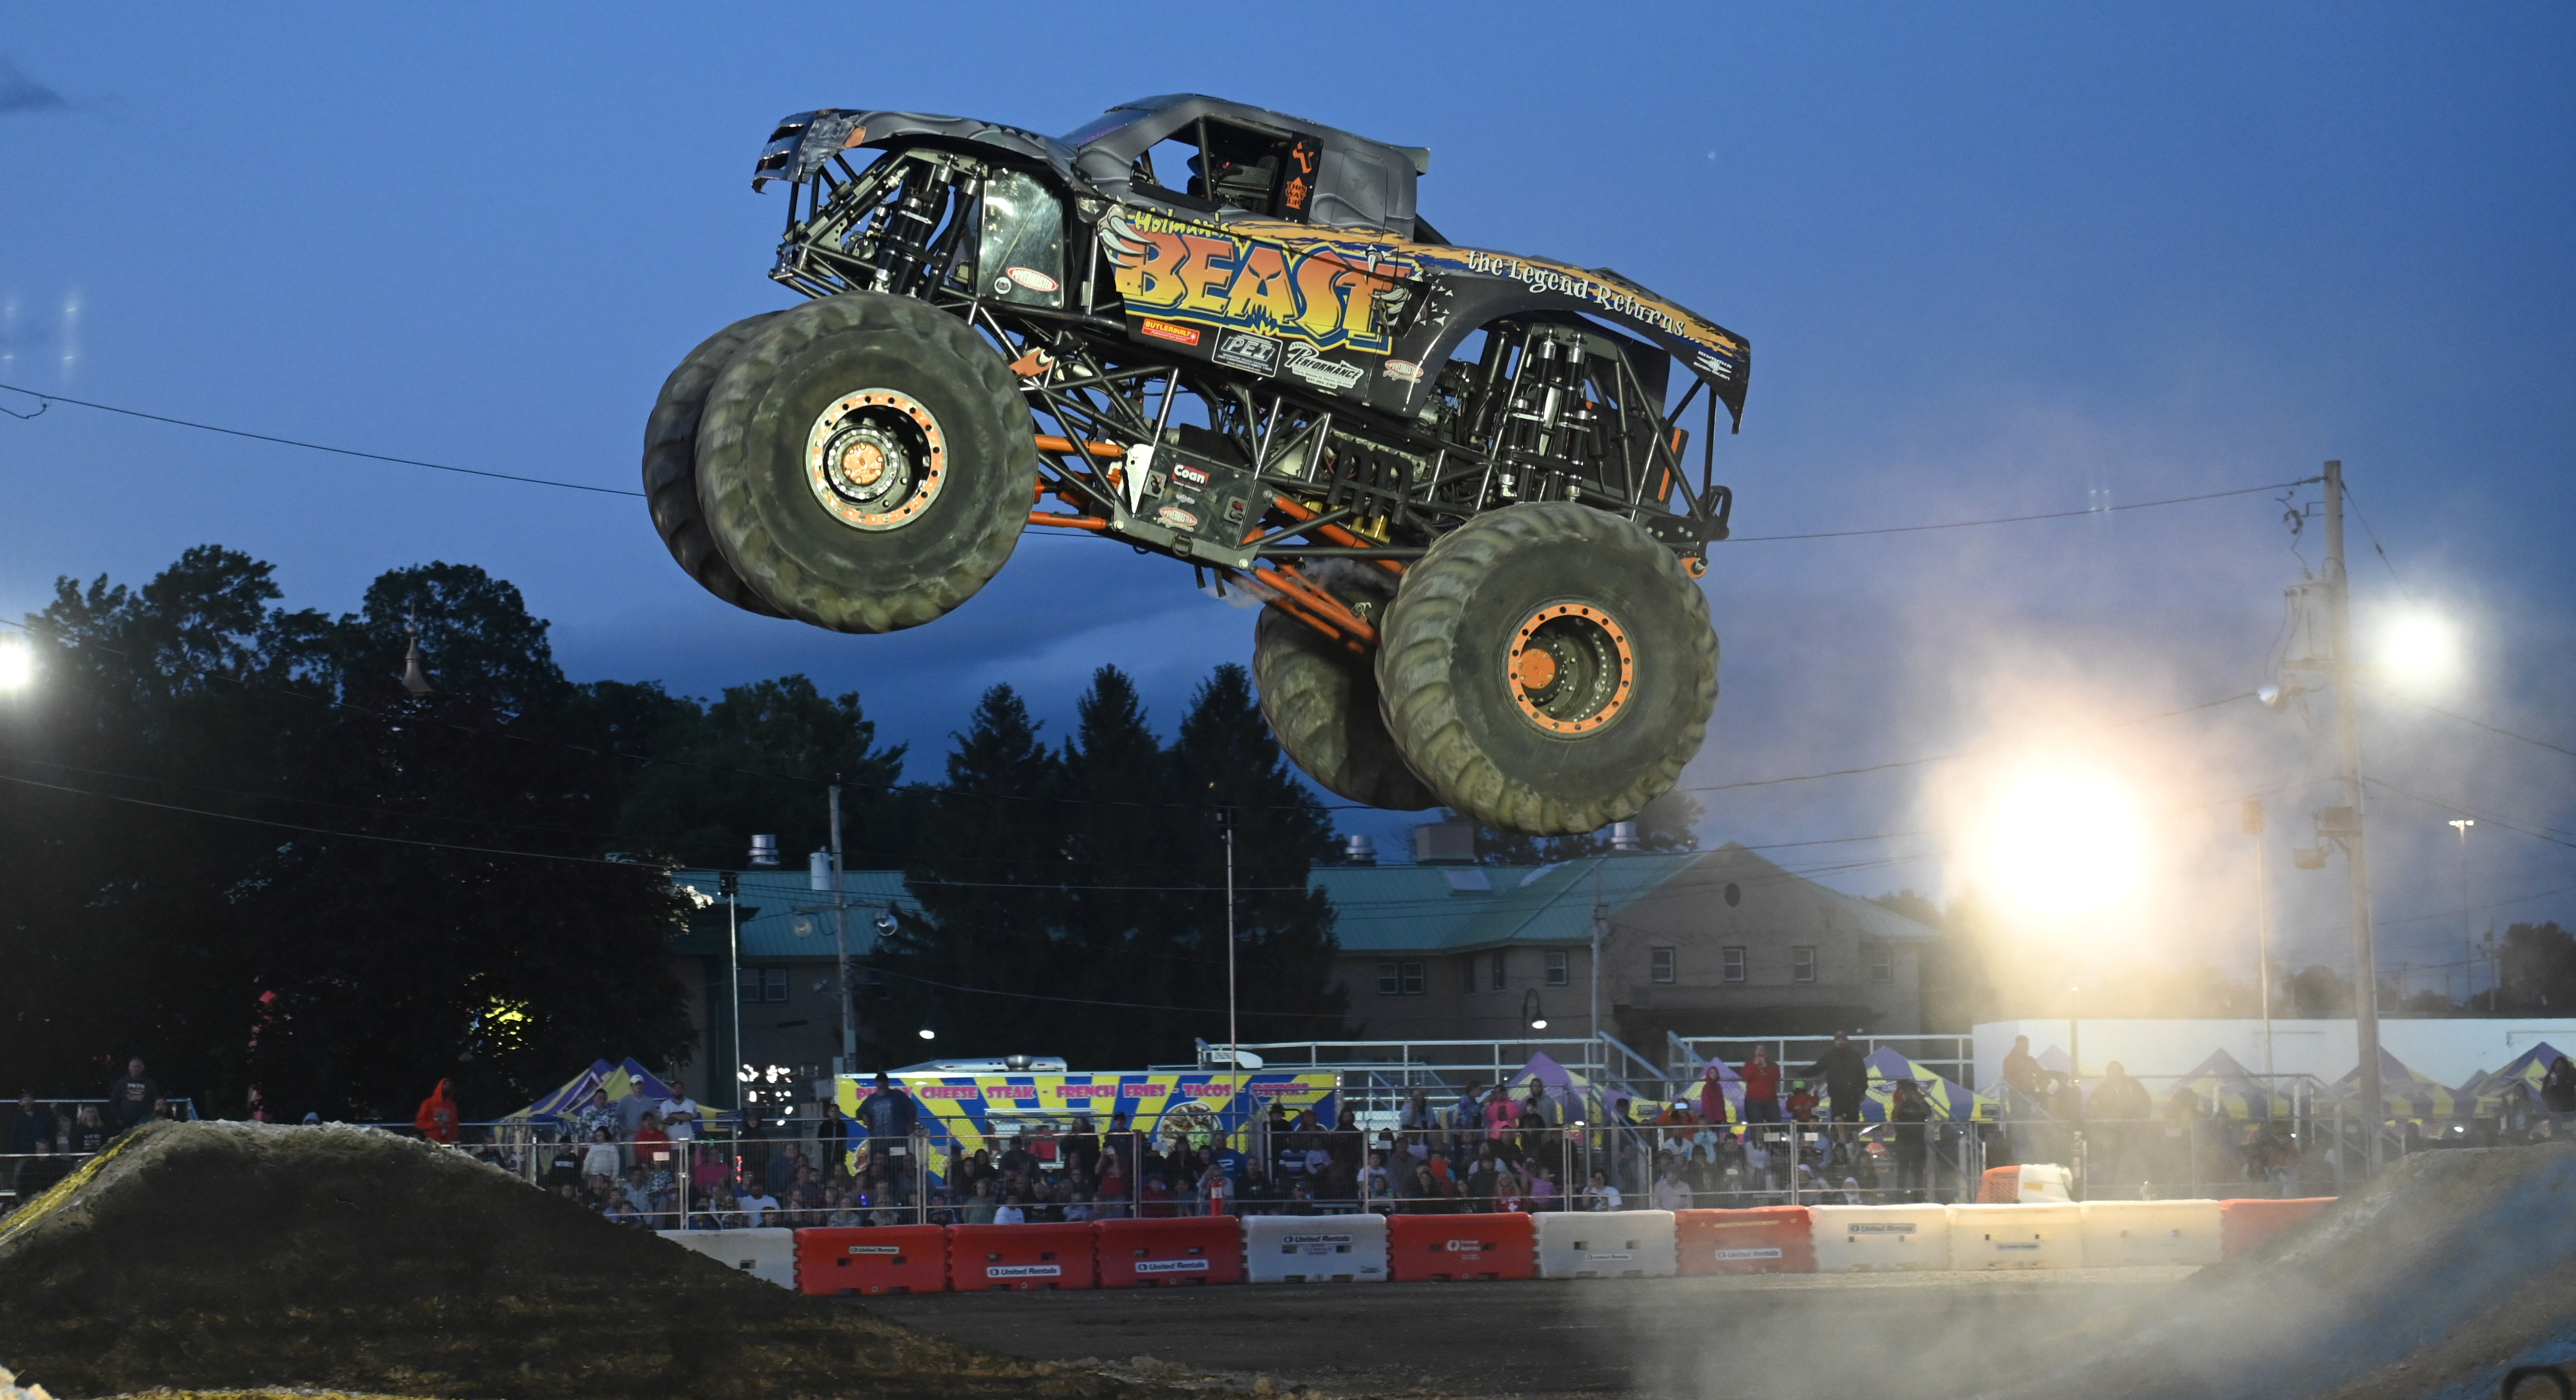 Monster Truck Show - Thursday - Hopkinton State Fair